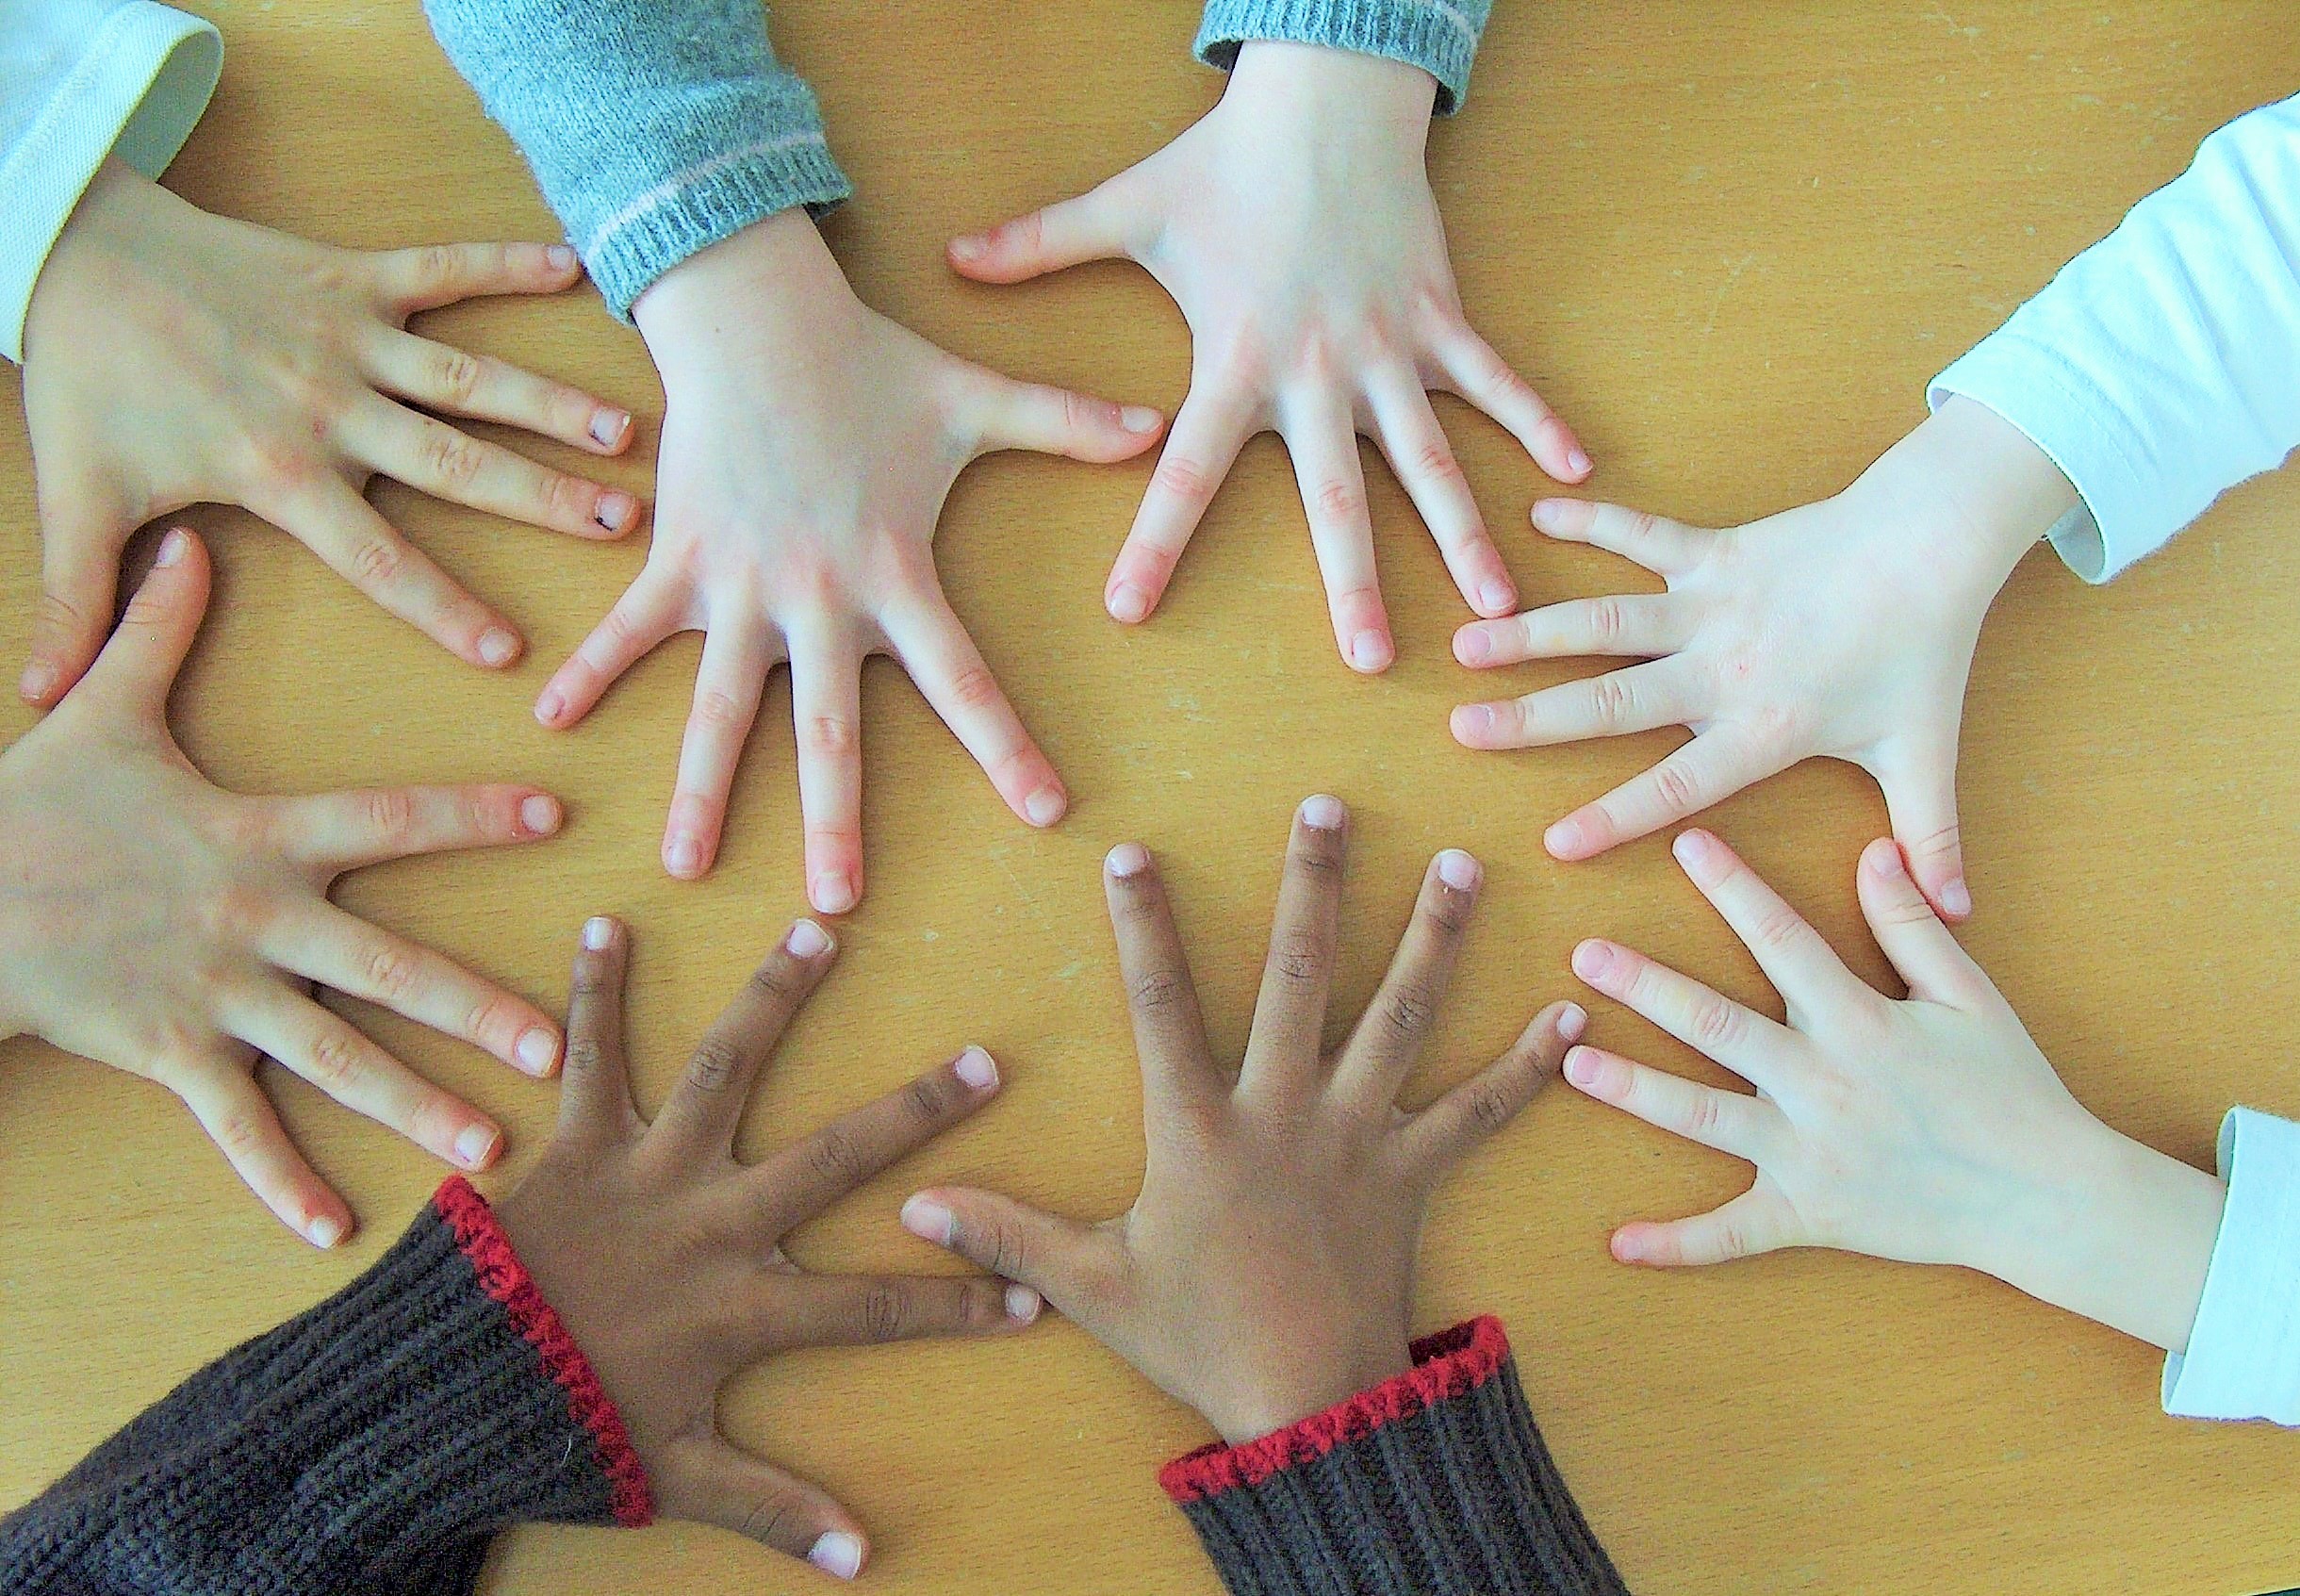 Las manos de los niños con muchos colores de pieles diferentes puestas sobre una mesa